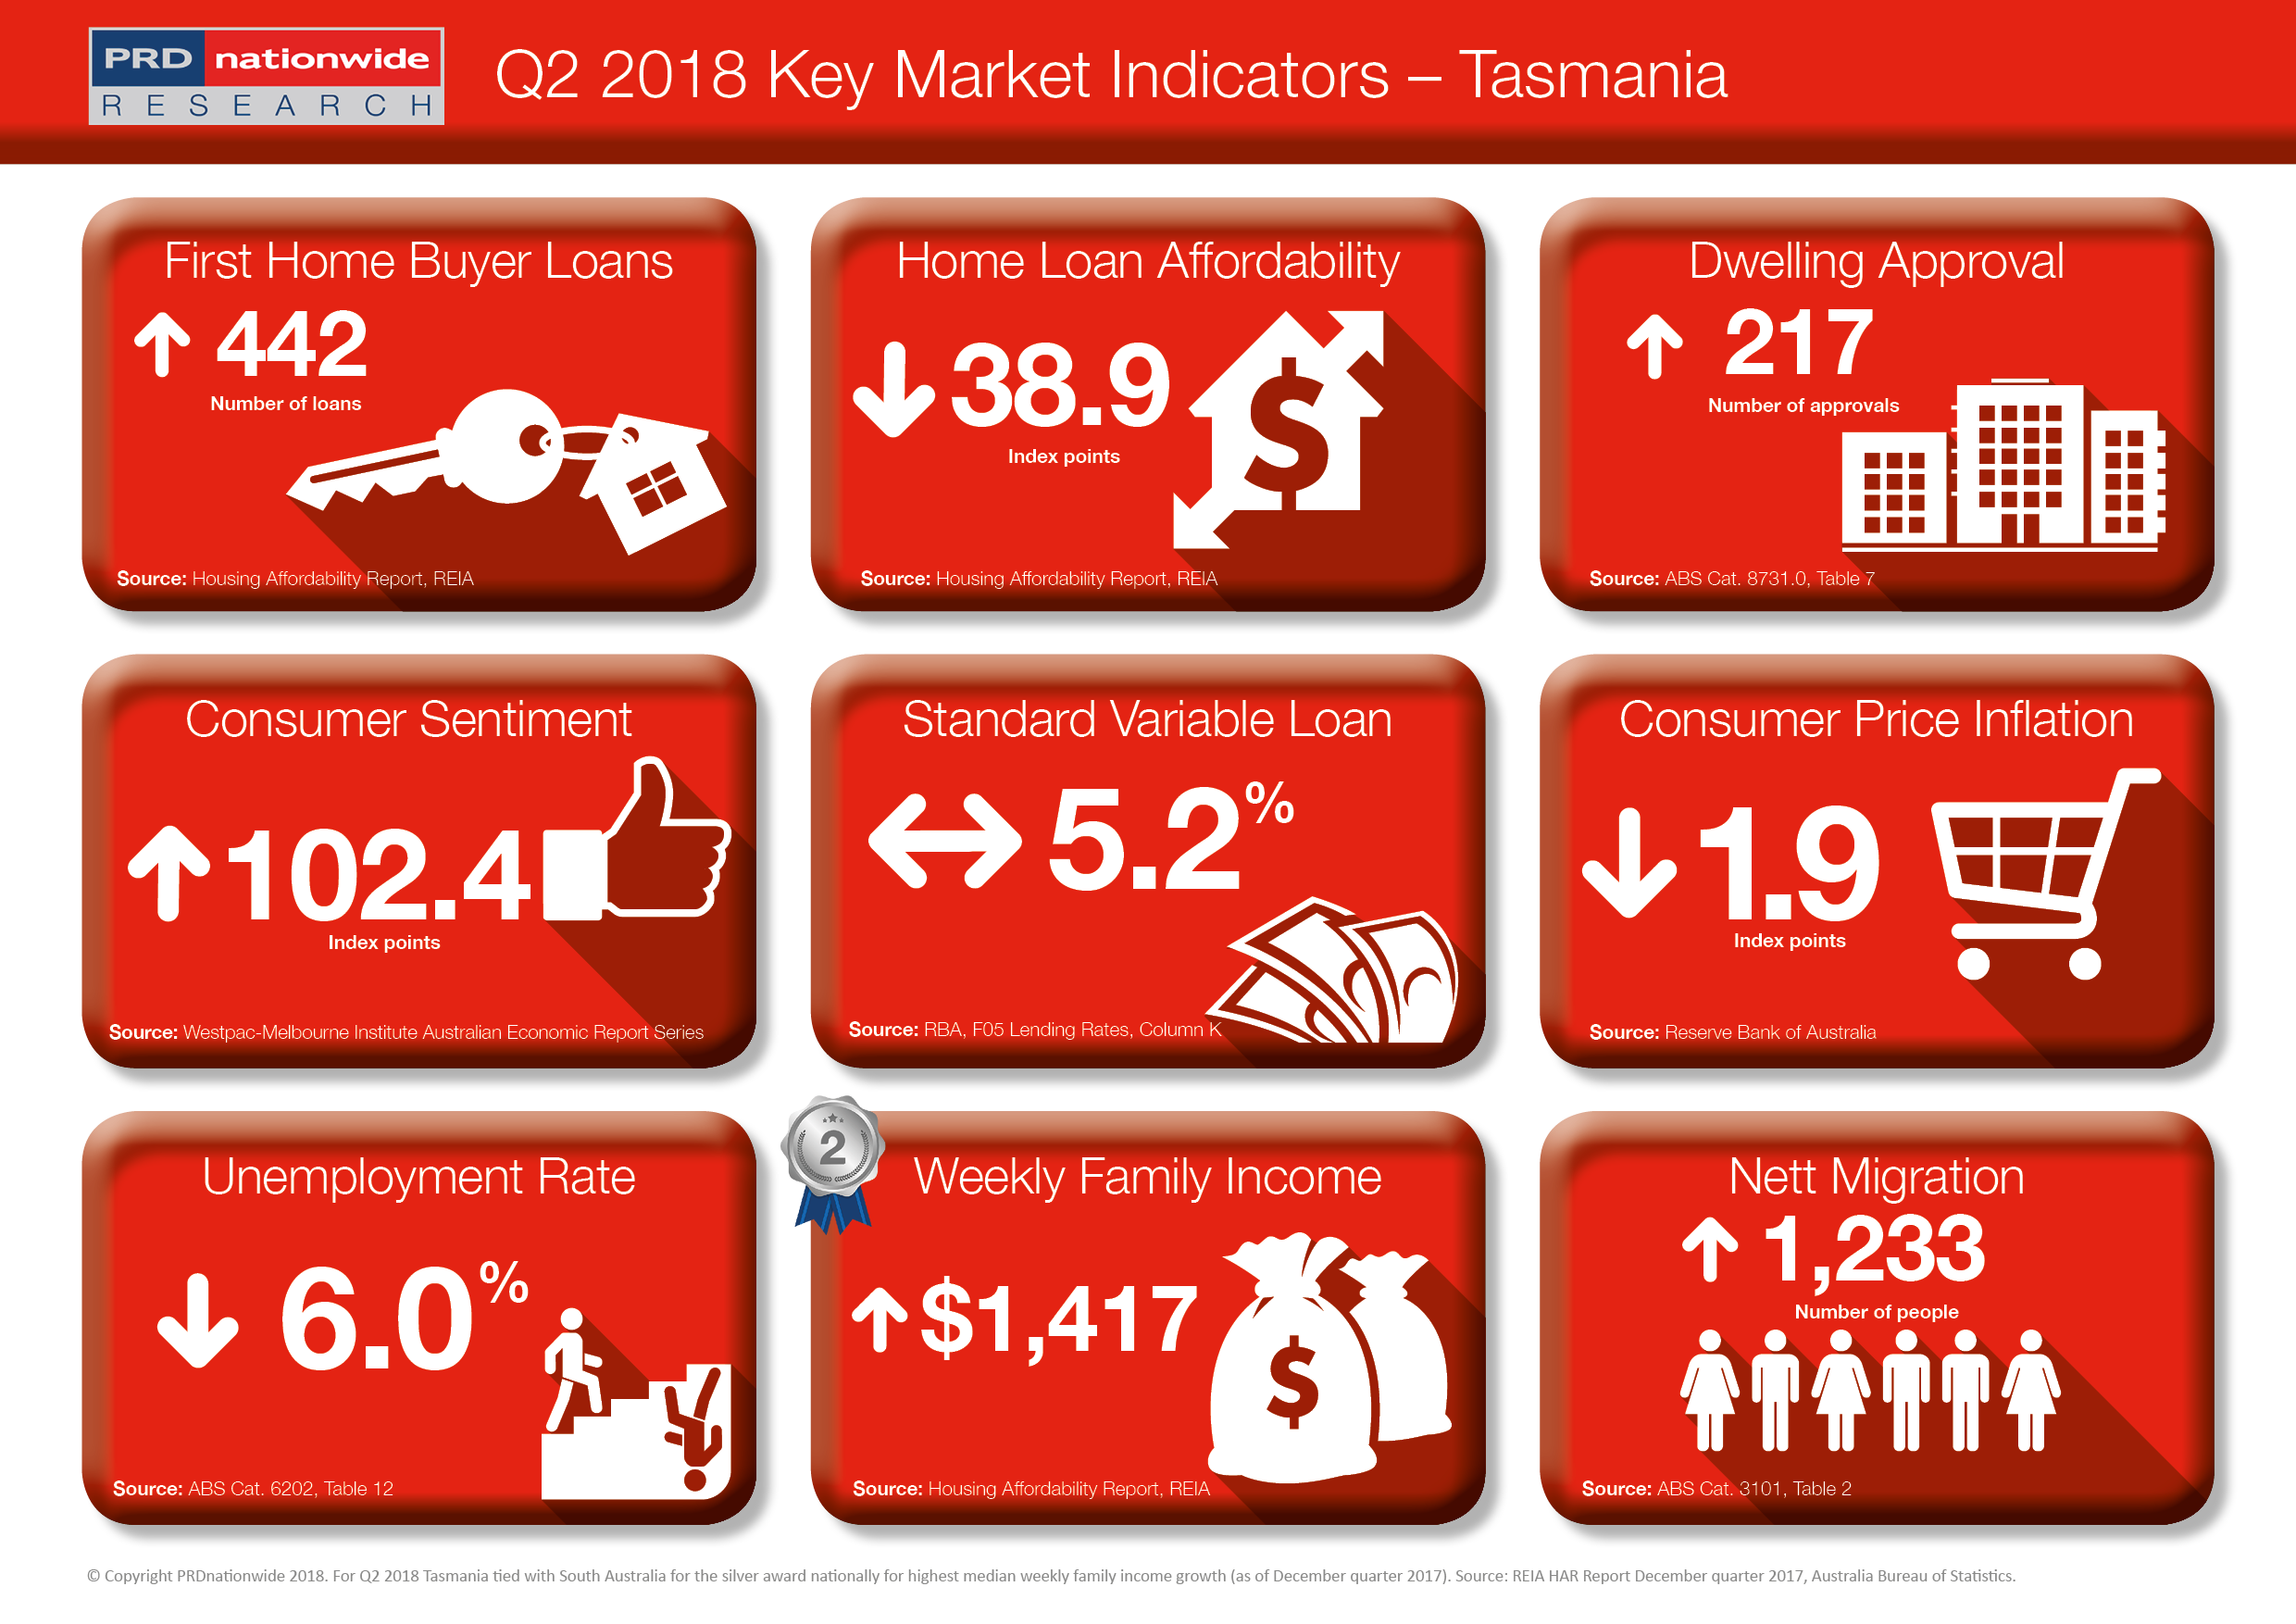 PRD Q2 Key Market Indicators 2018 - TAS.png